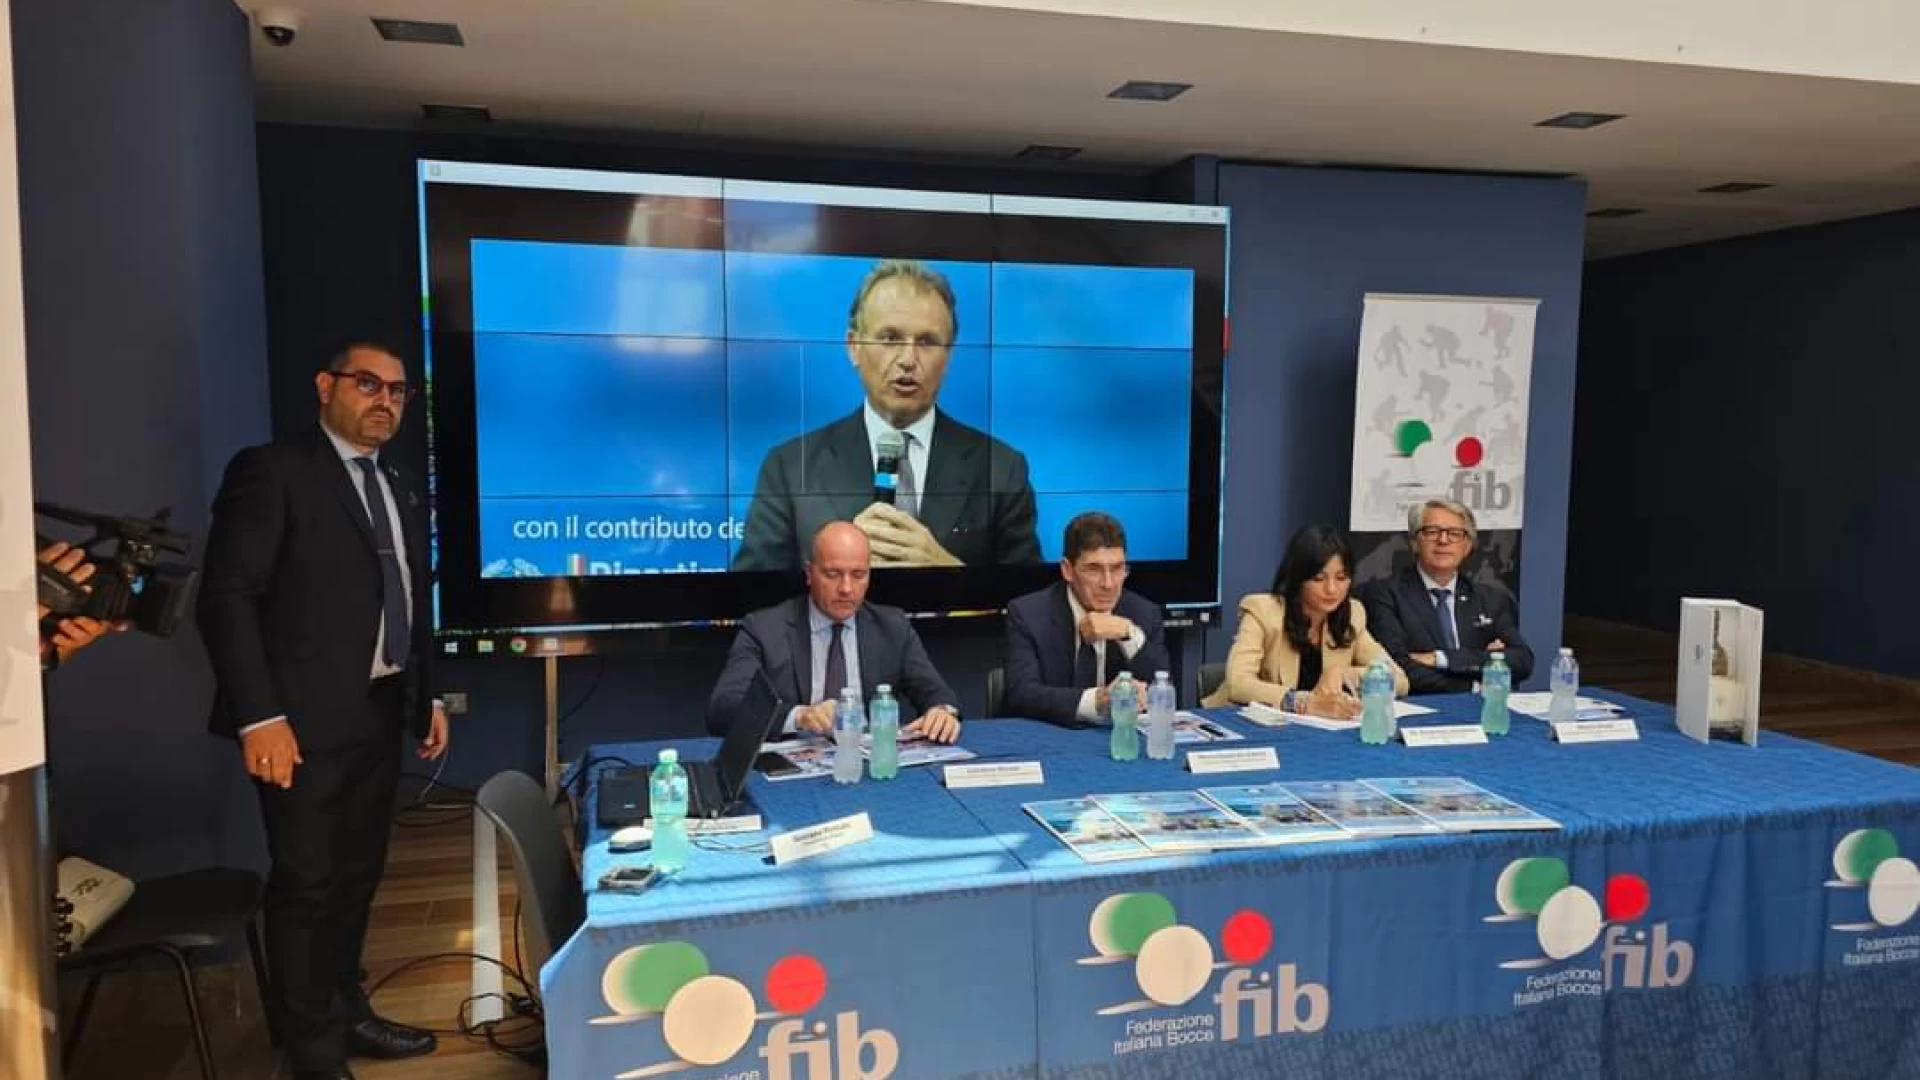 Final Four Scudetto a Campobasso: la conferenza stampa inaugurale dell'evento